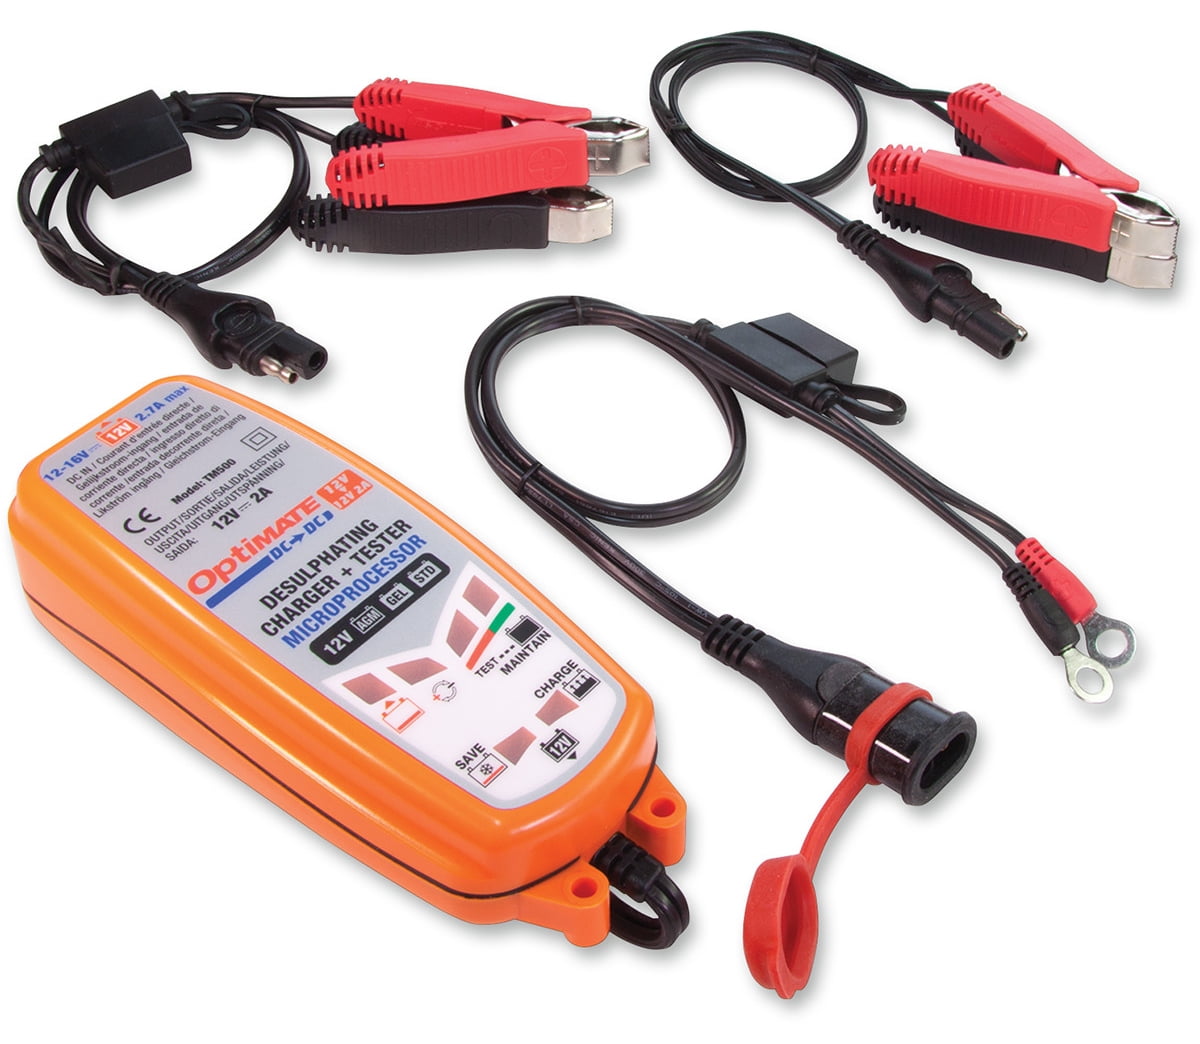 Chargeur De Batterie Tecmate Optimate 5 Select 6/12V TM-320 - Chargeur  batterie